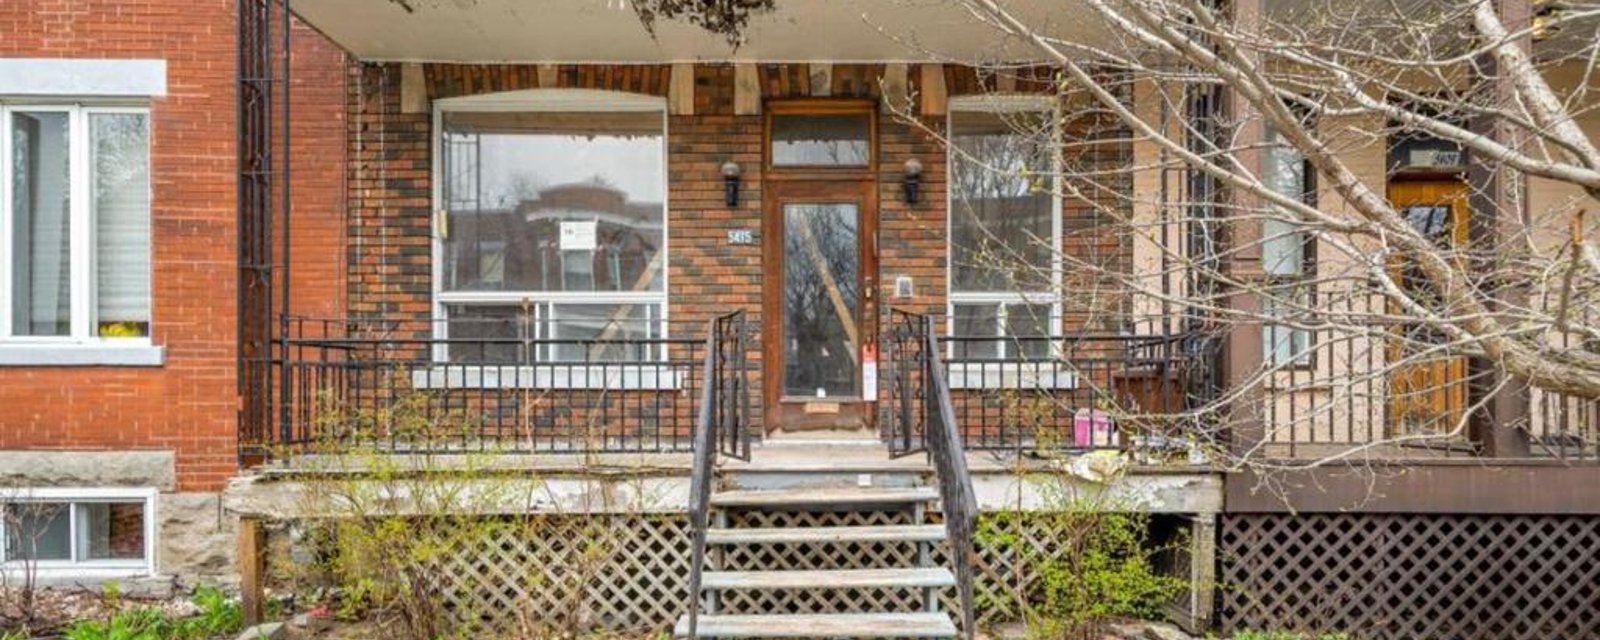 Cette maison de Montréal avec l'intérieur démoli est à vendre pour un prix qui fait sursauter 